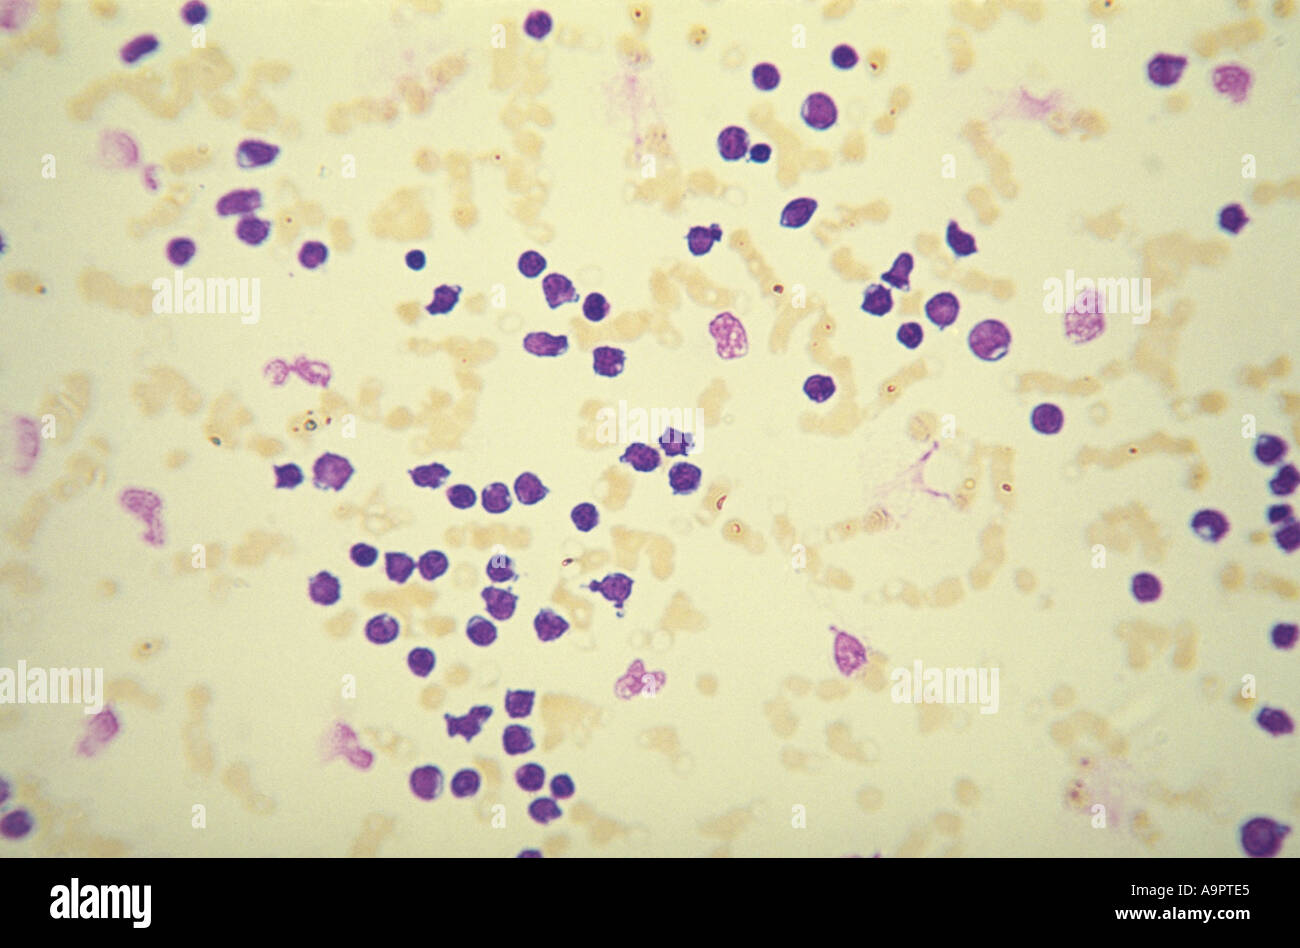 Photomicrograph acute myeloid leukemia Stock Photo